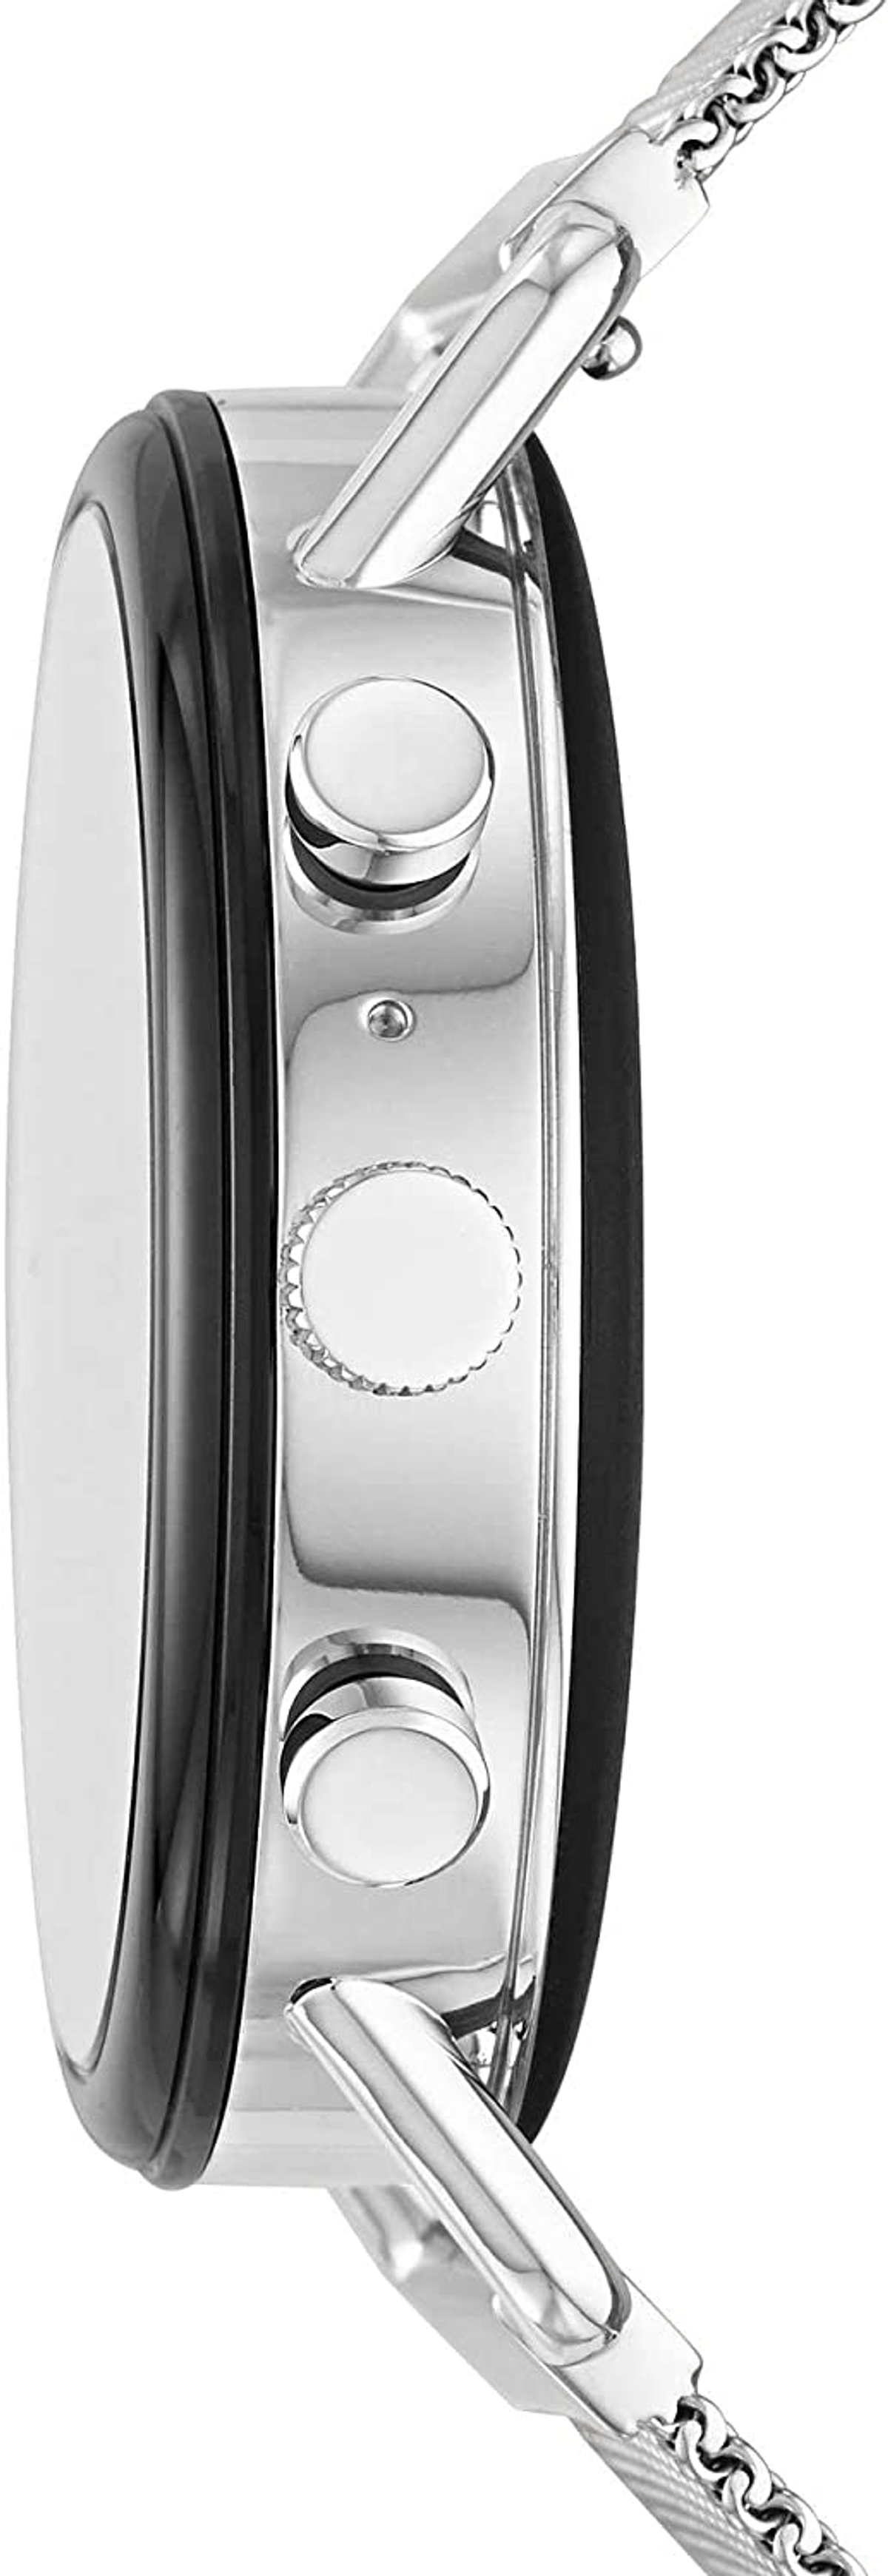 SKAGEN Smartwatch Skagen SKT5102 Silver/Black Edelstahl Smartwatch silicone, mm, 185